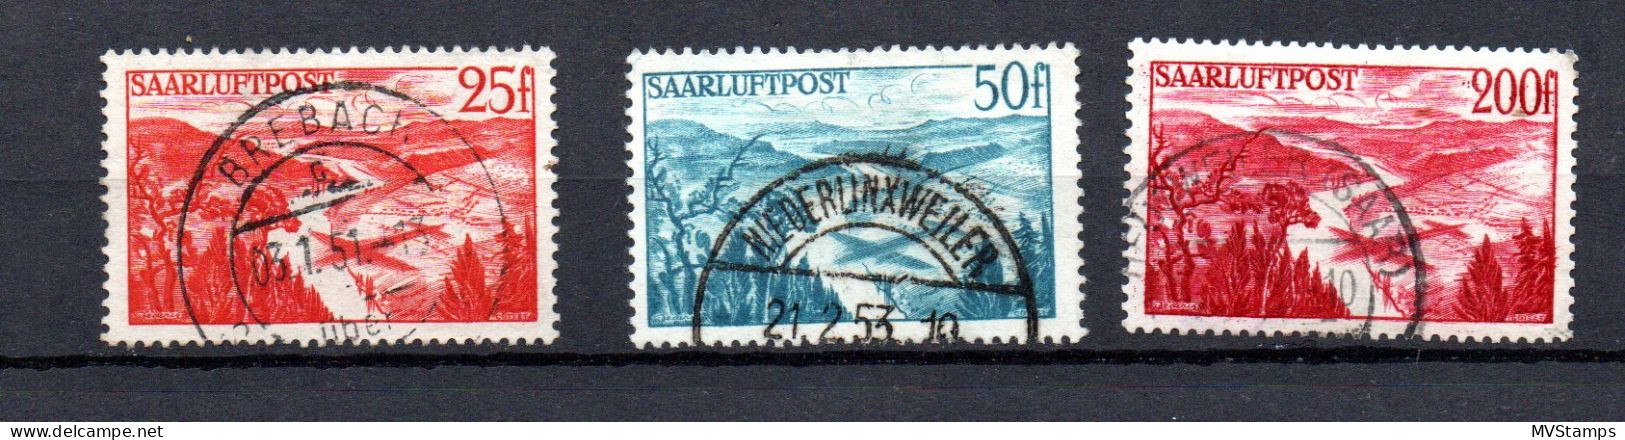 Saar/Germany 1948 Old Set Airmail Stamps (Michel 252/54) Nice Used - Posta Aerea